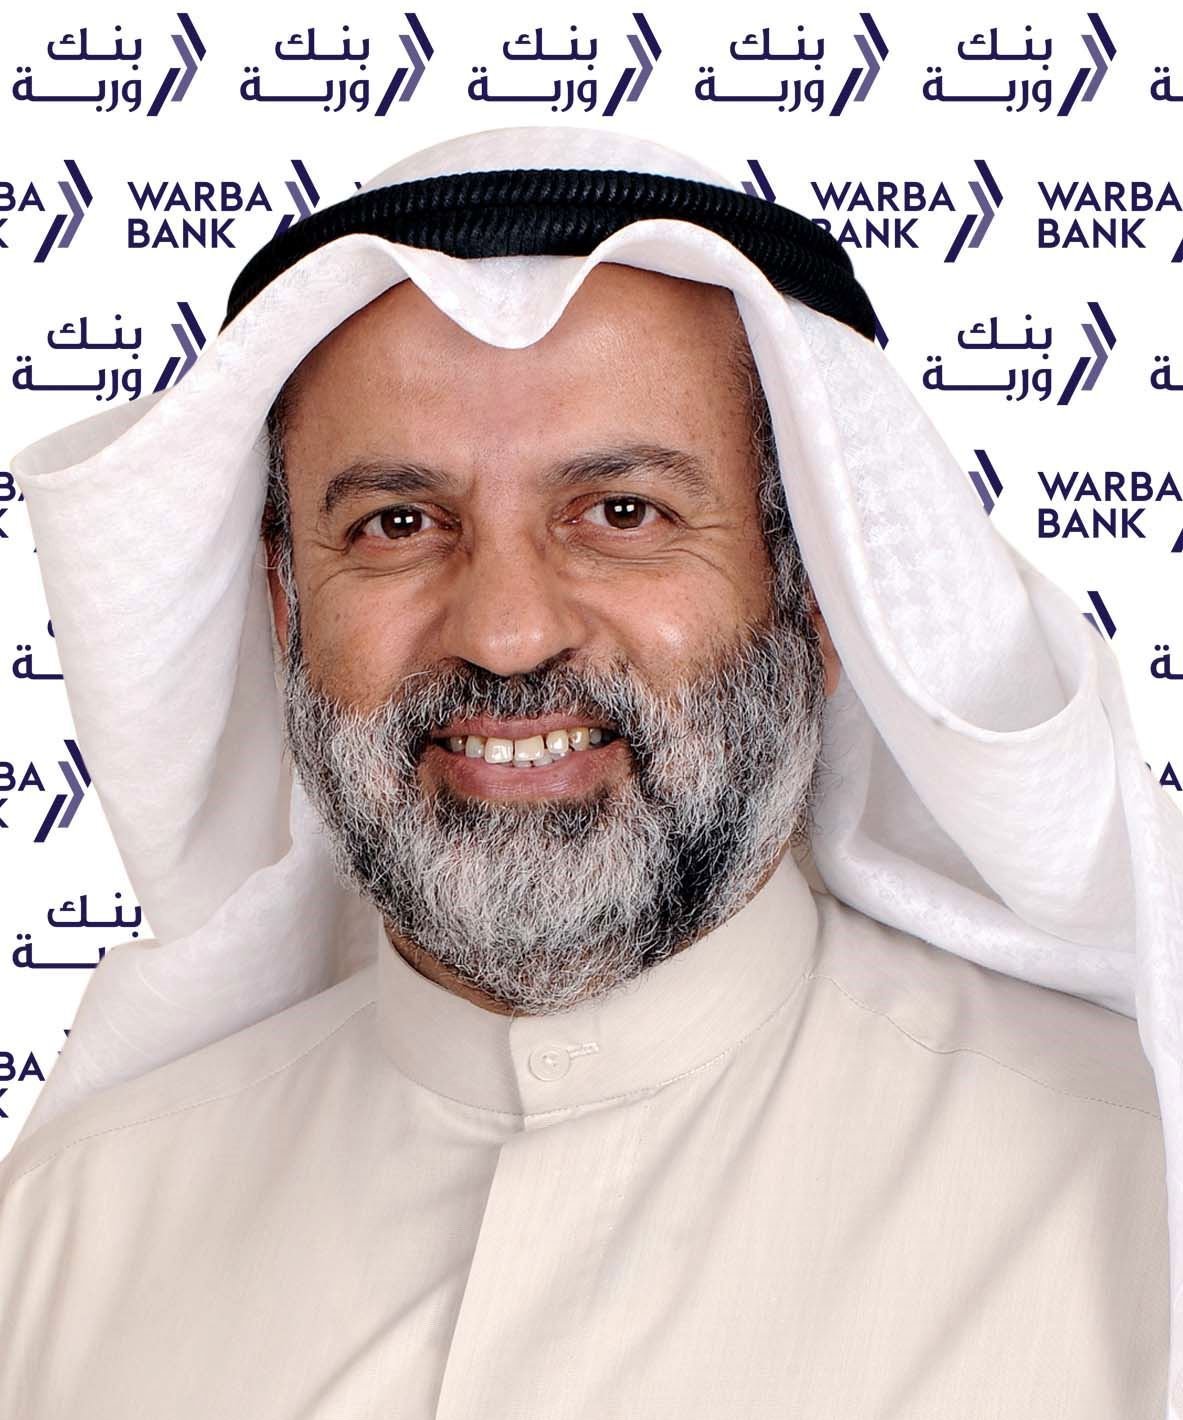  السيد عبد الوهاب عبد الله الحوطي - رئيس مجلس إدارة بنك وربة